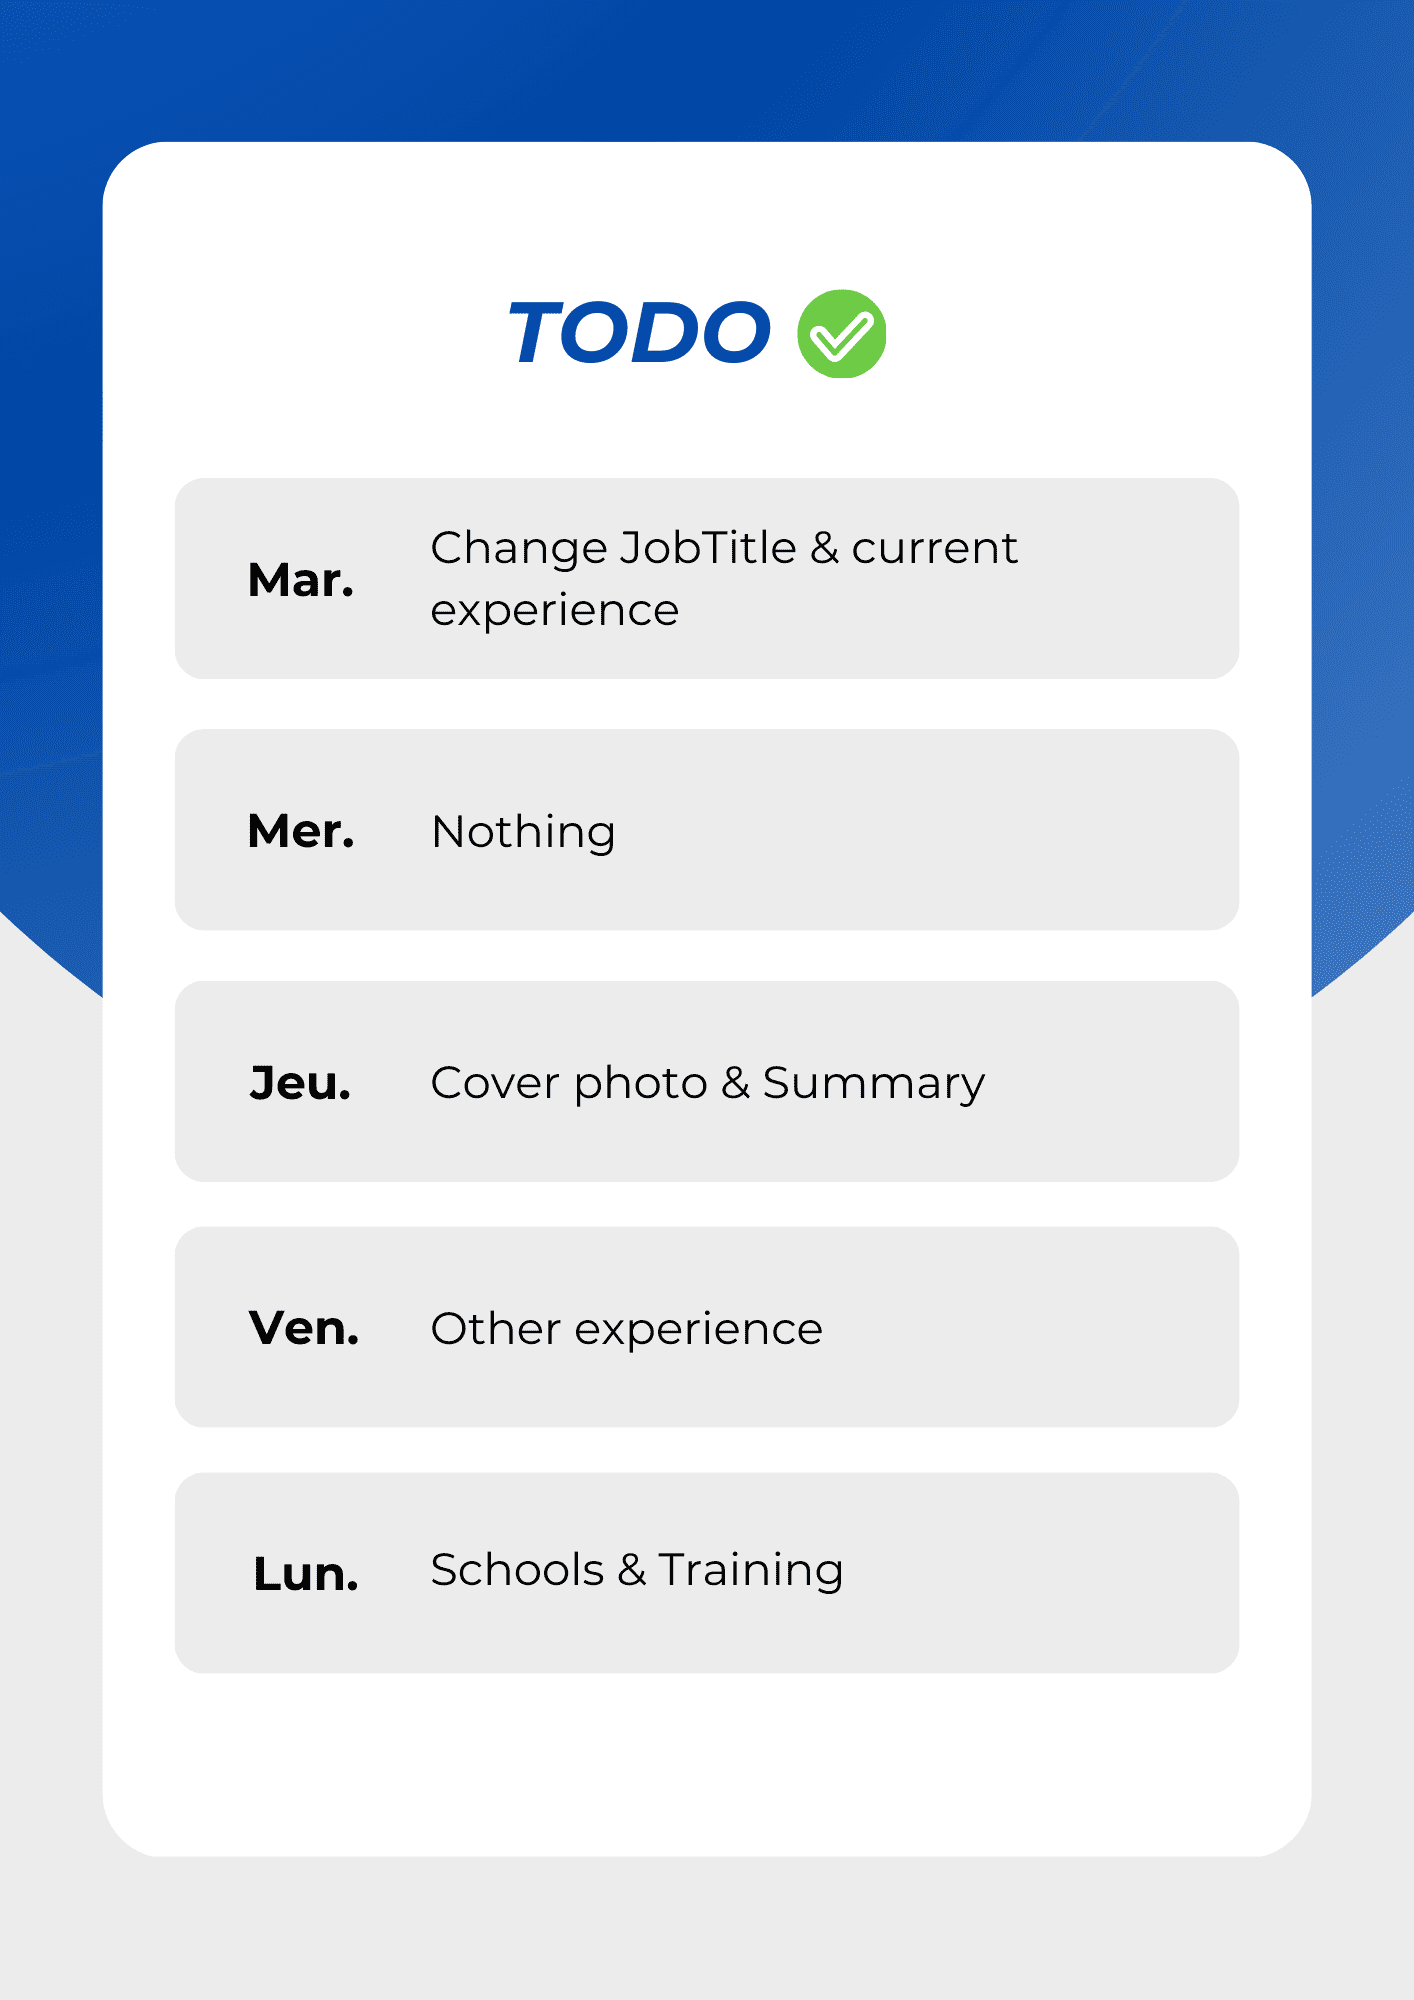 TODO Rebranding